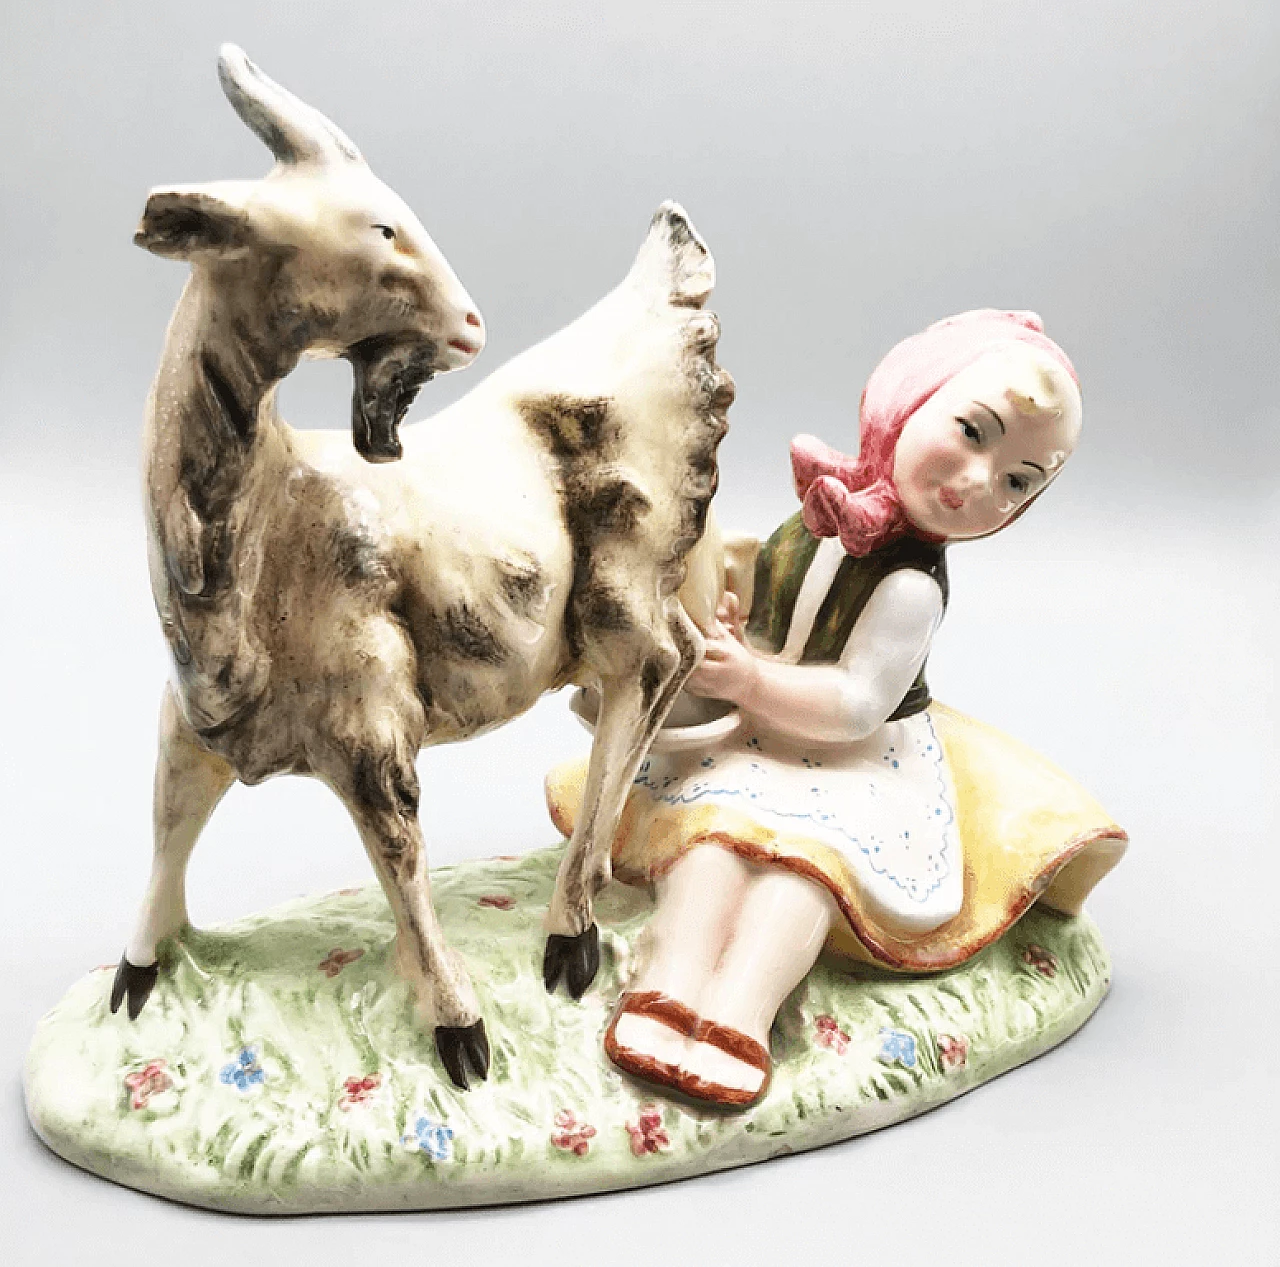 Sculpture depicting a shepherdess in ceramic, 1950s 1